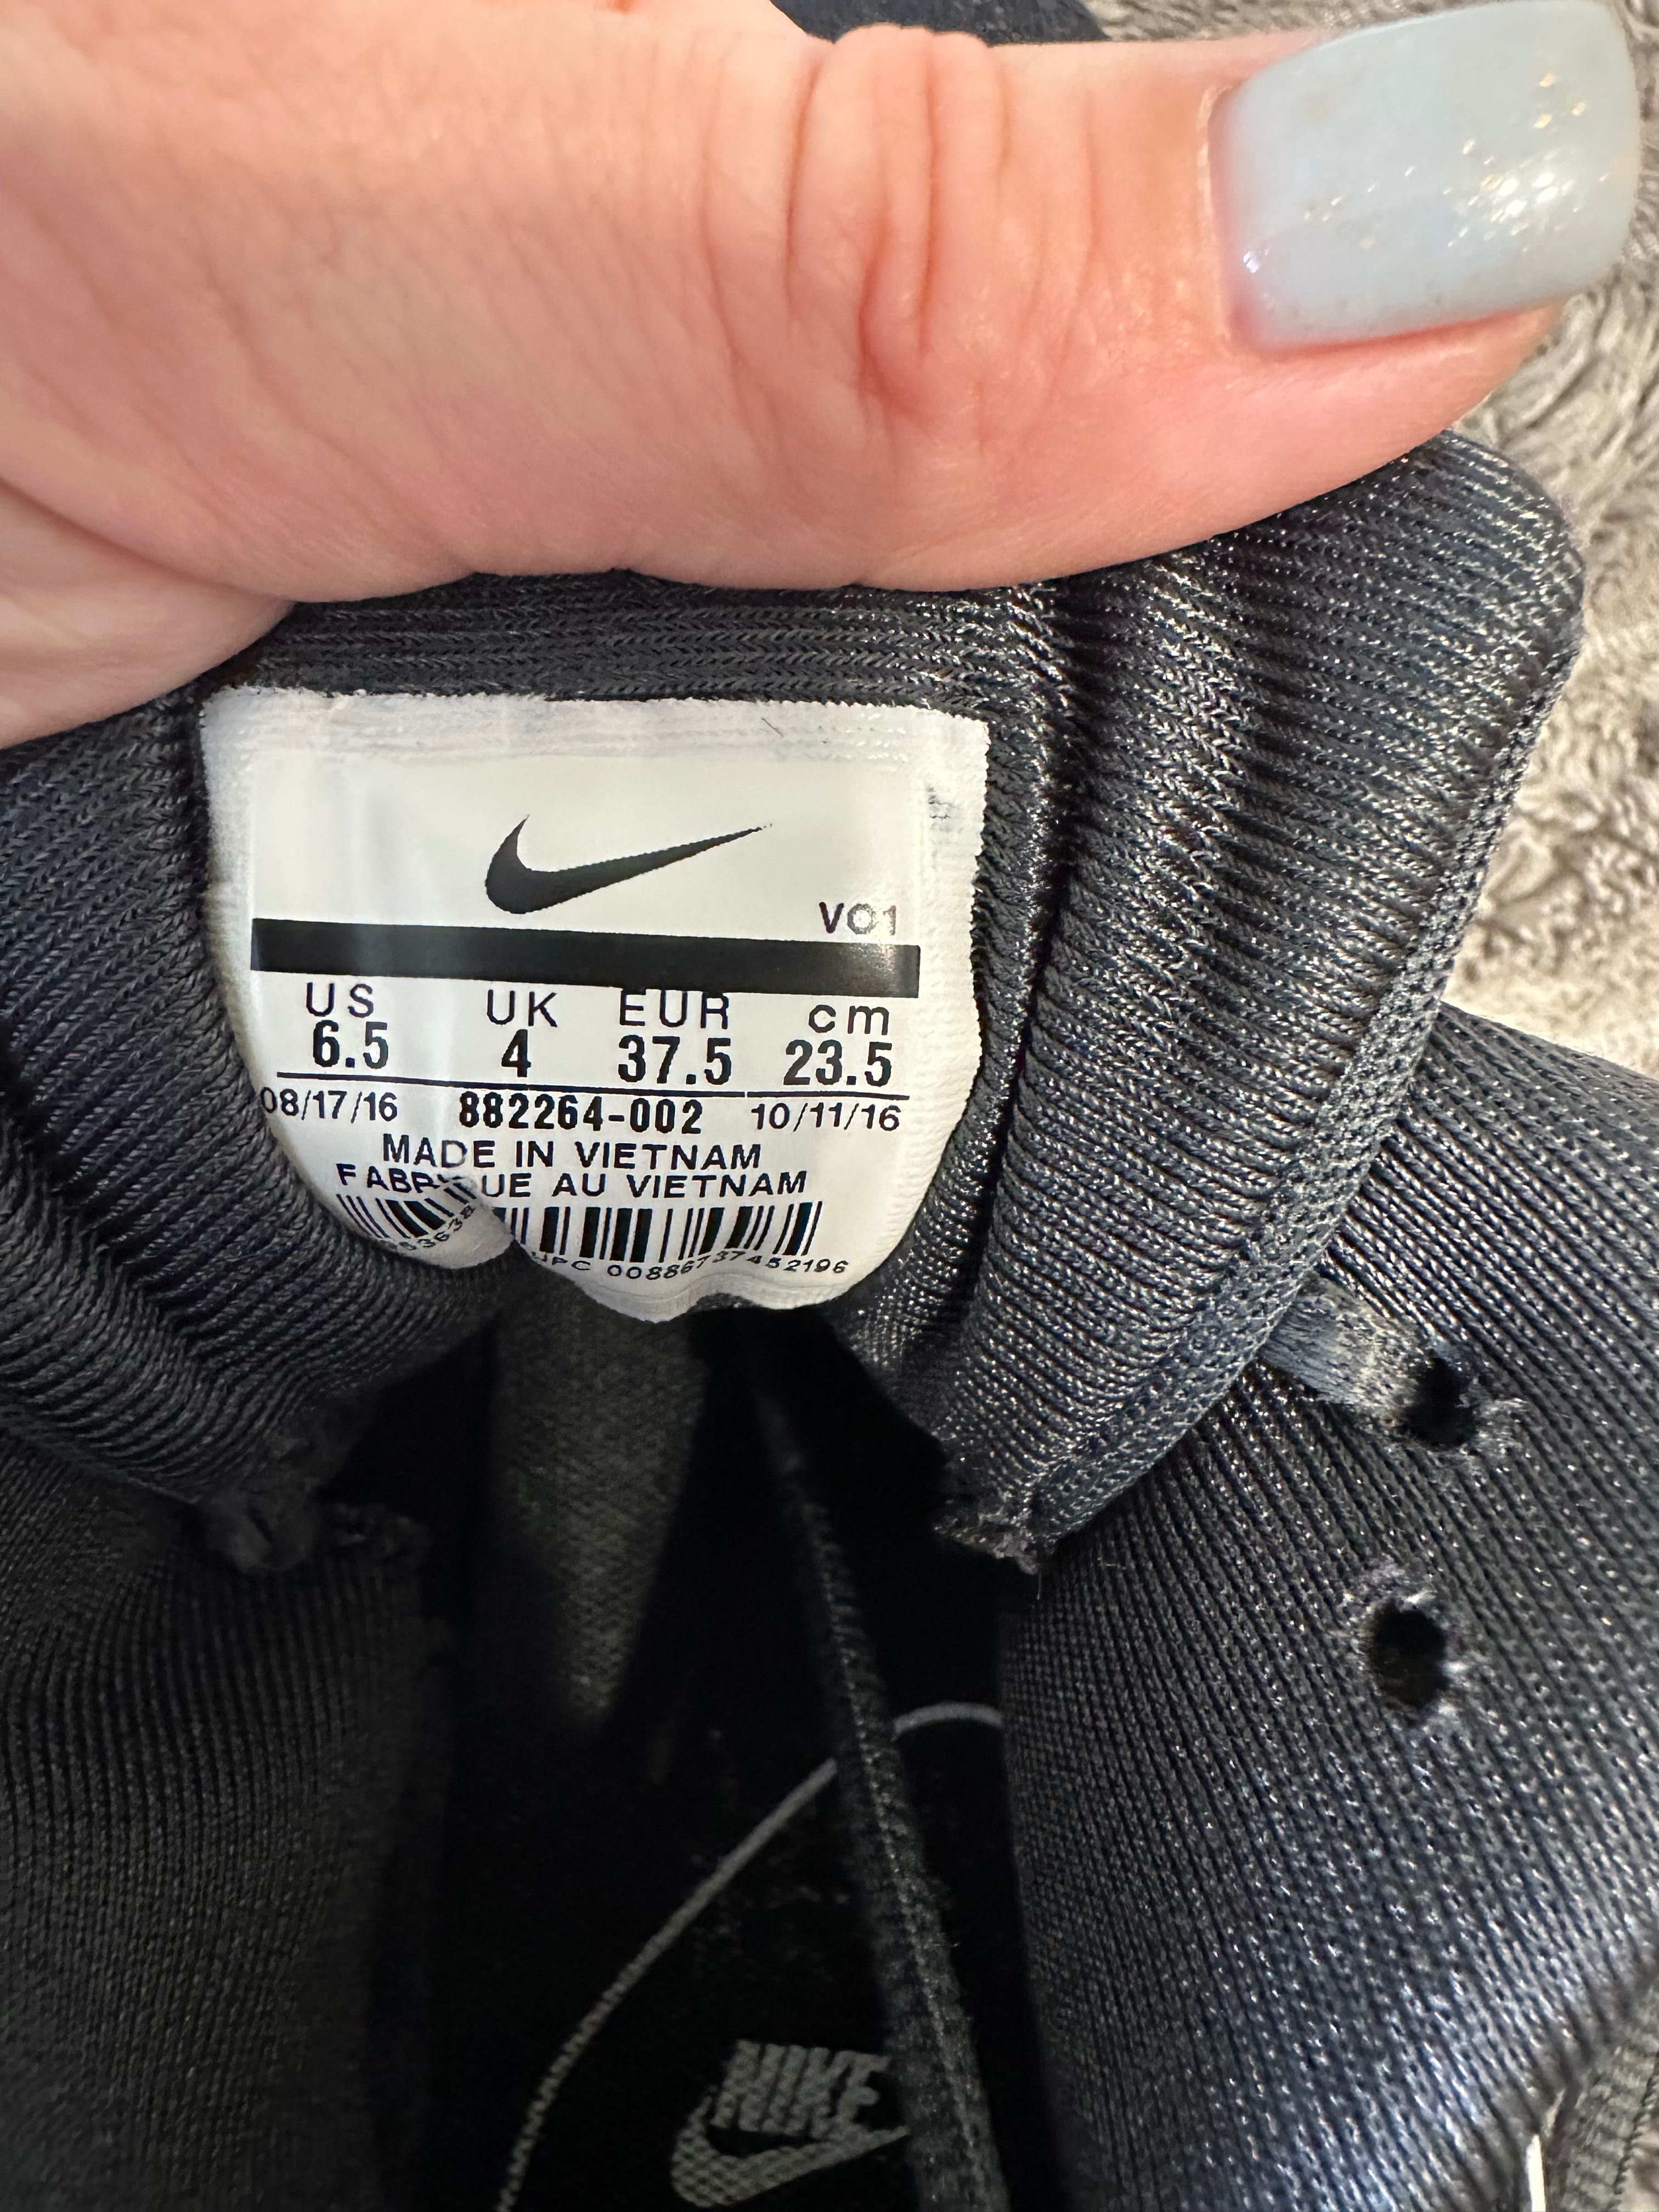 Кросівки Nike Womens Shoes Jamaza, Оригінал, 23,5 см, розмір 37,5